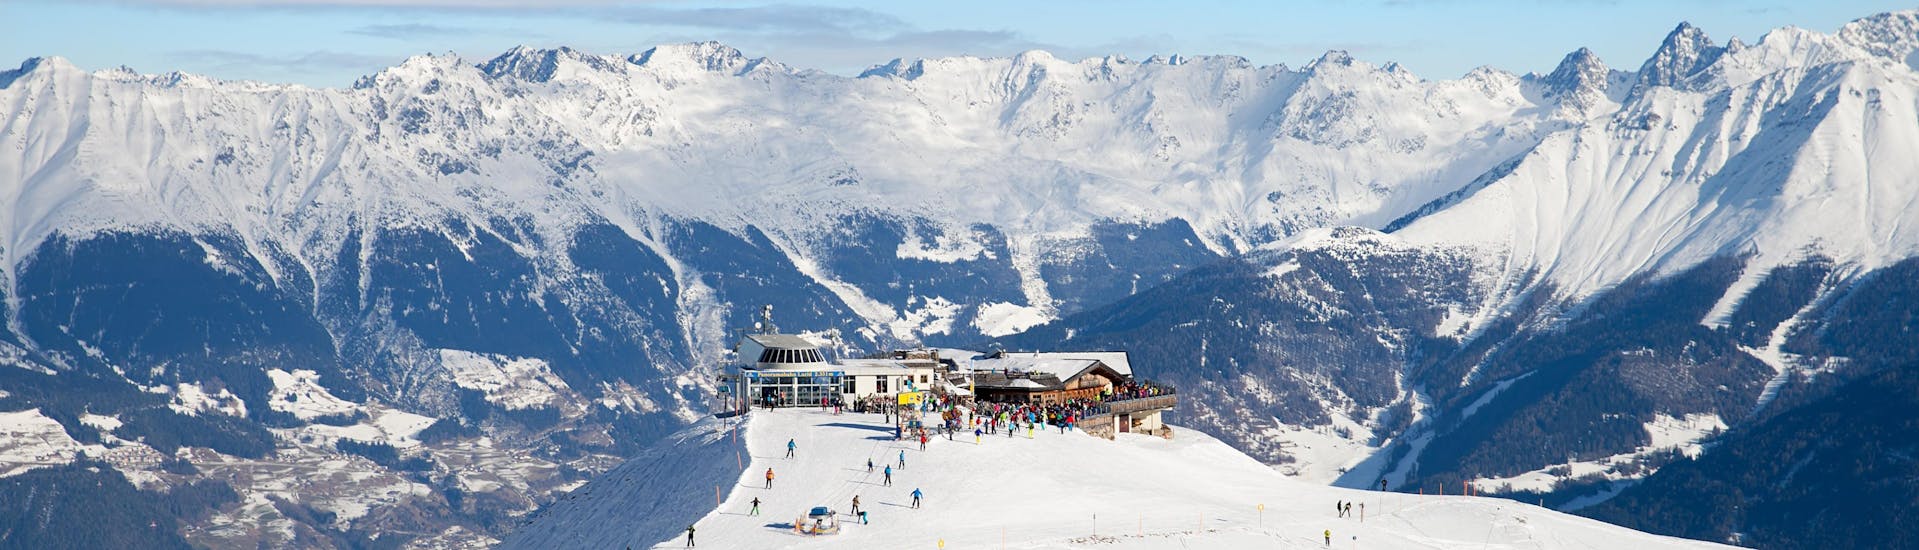 Image de la vue panoramique depuis le Lazidbahn dans la station de ski de Serfaus-Fiss-Ladis.